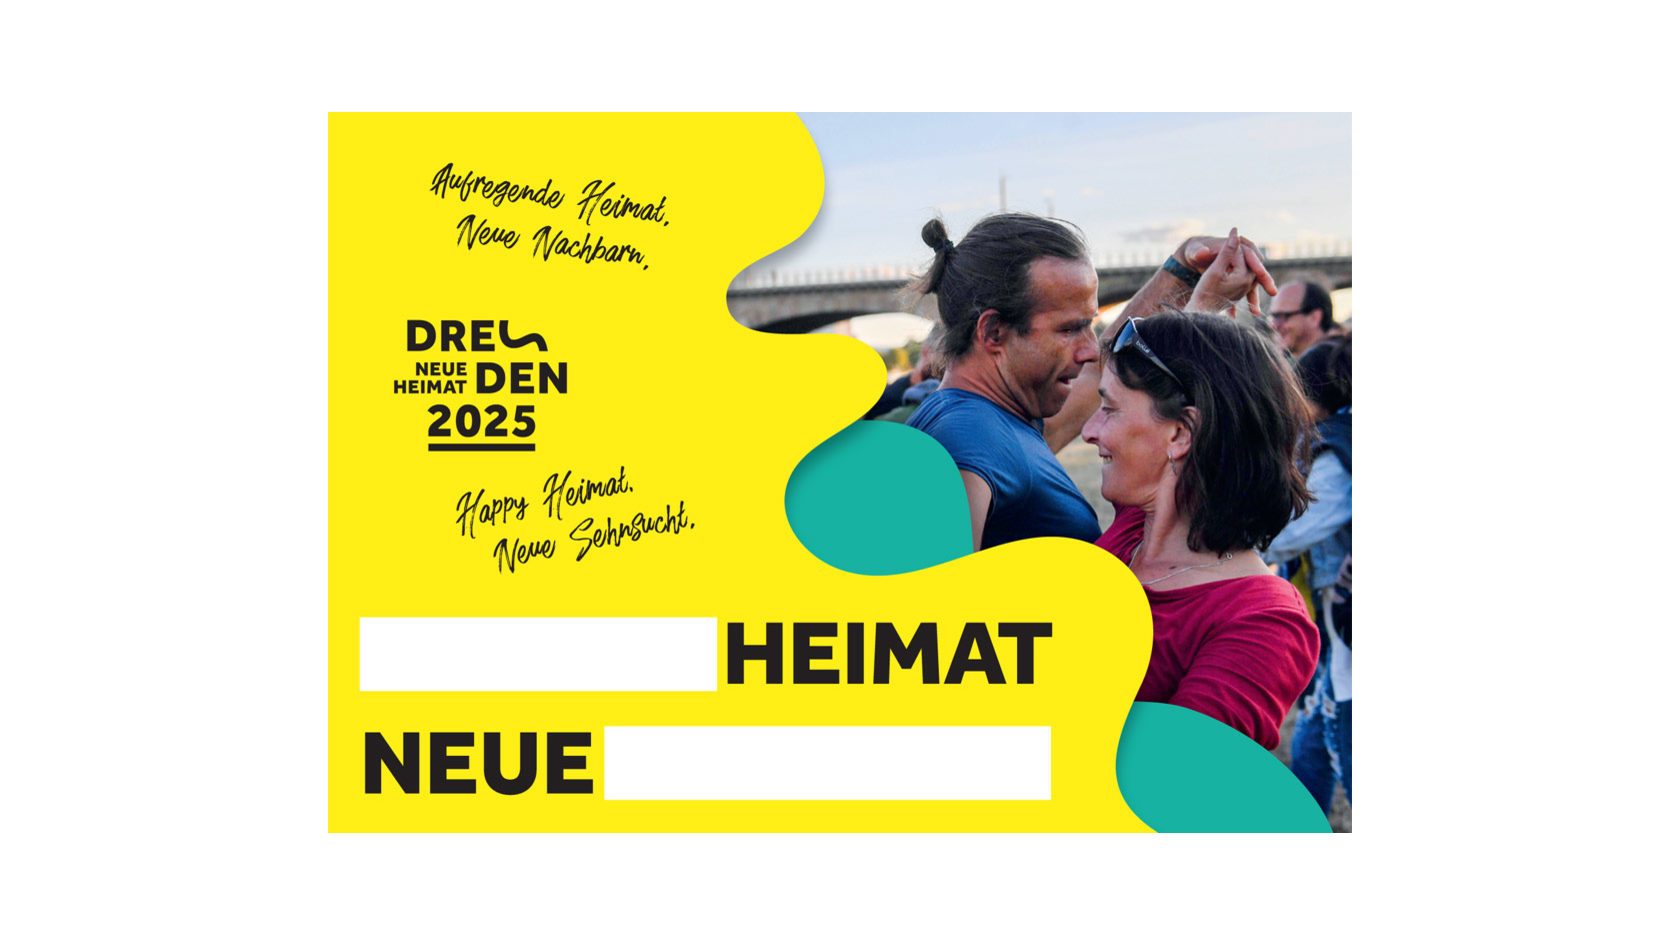 An den Elbwiesen tanzendes Paar als Bildmotiv der Postkartenaktion, um das Motto "Neue Heimat" selbst zu ergänzen